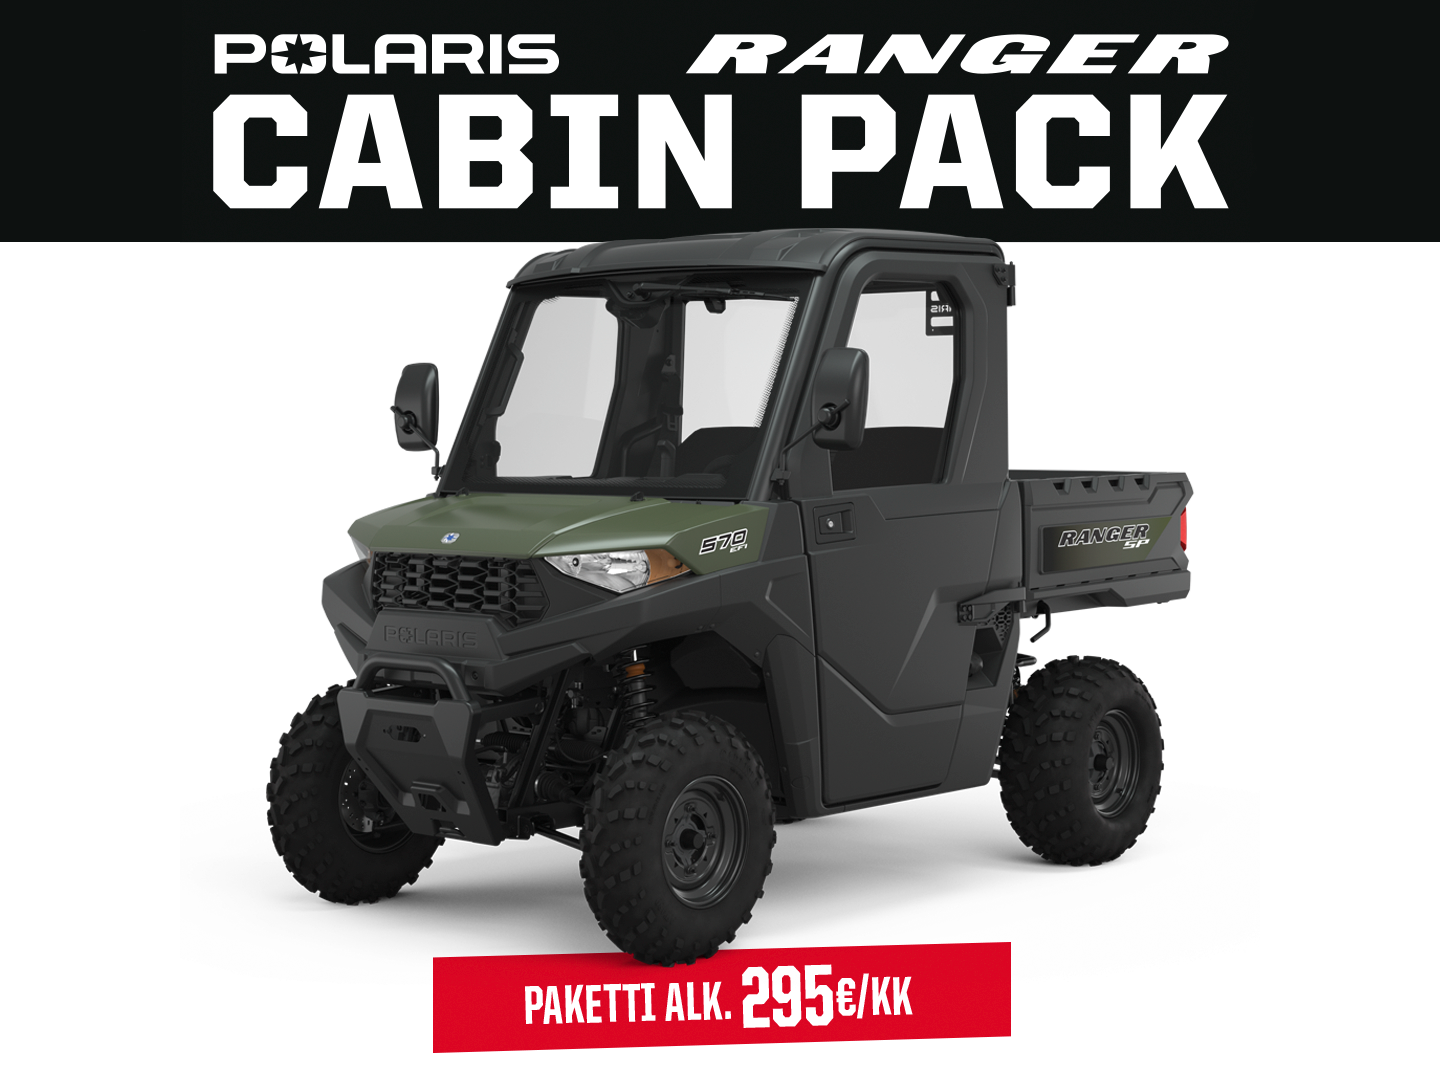 Polaris Cabin Pack